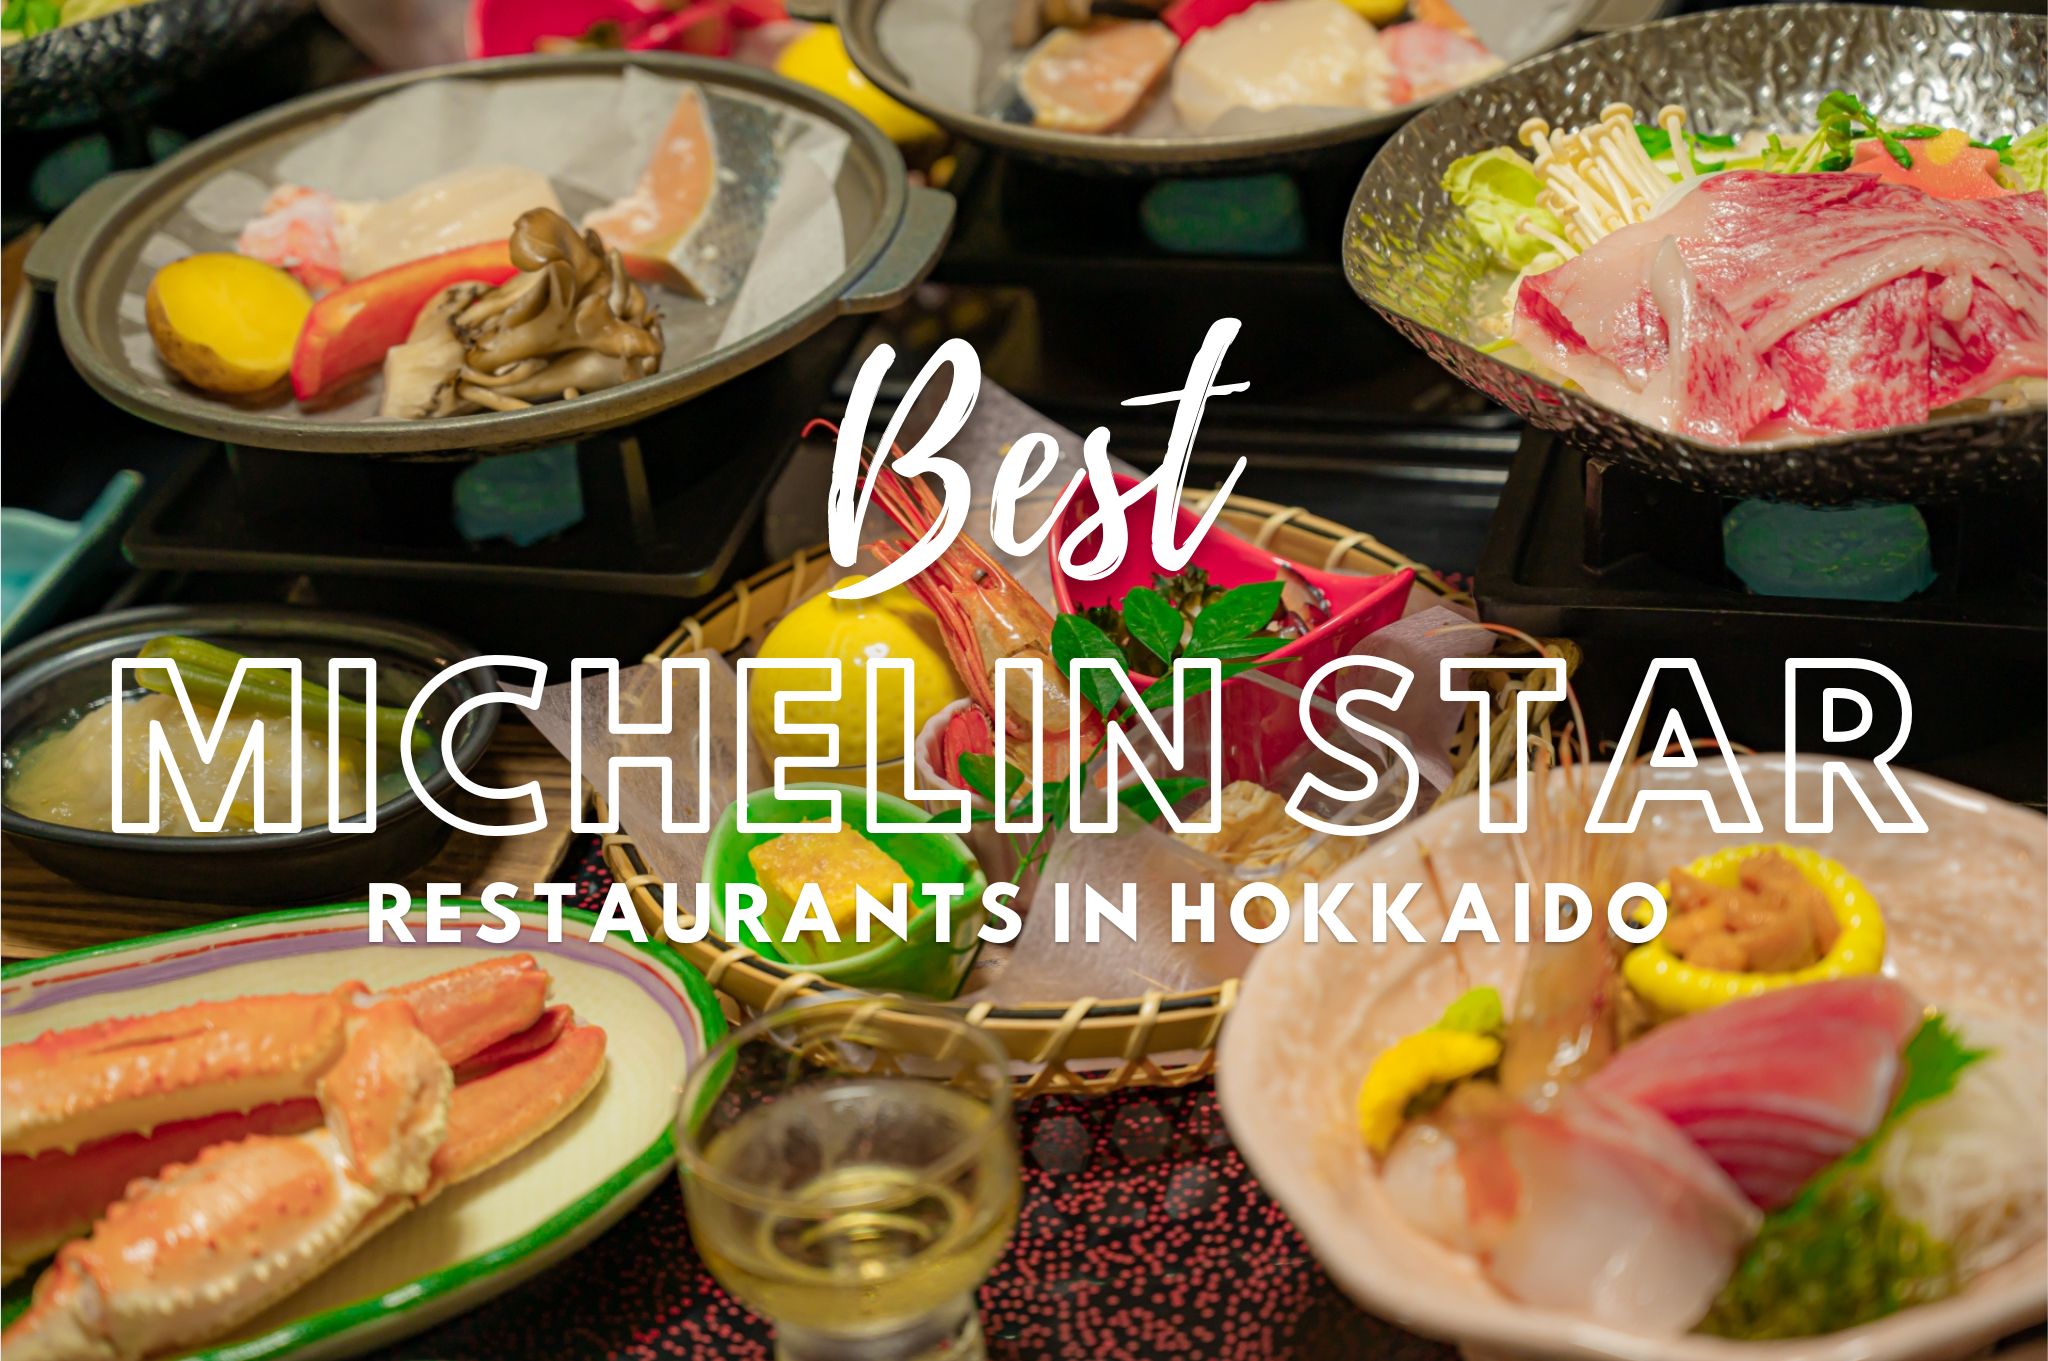 13 Best Michelin Star Restaurants in Hokkaido